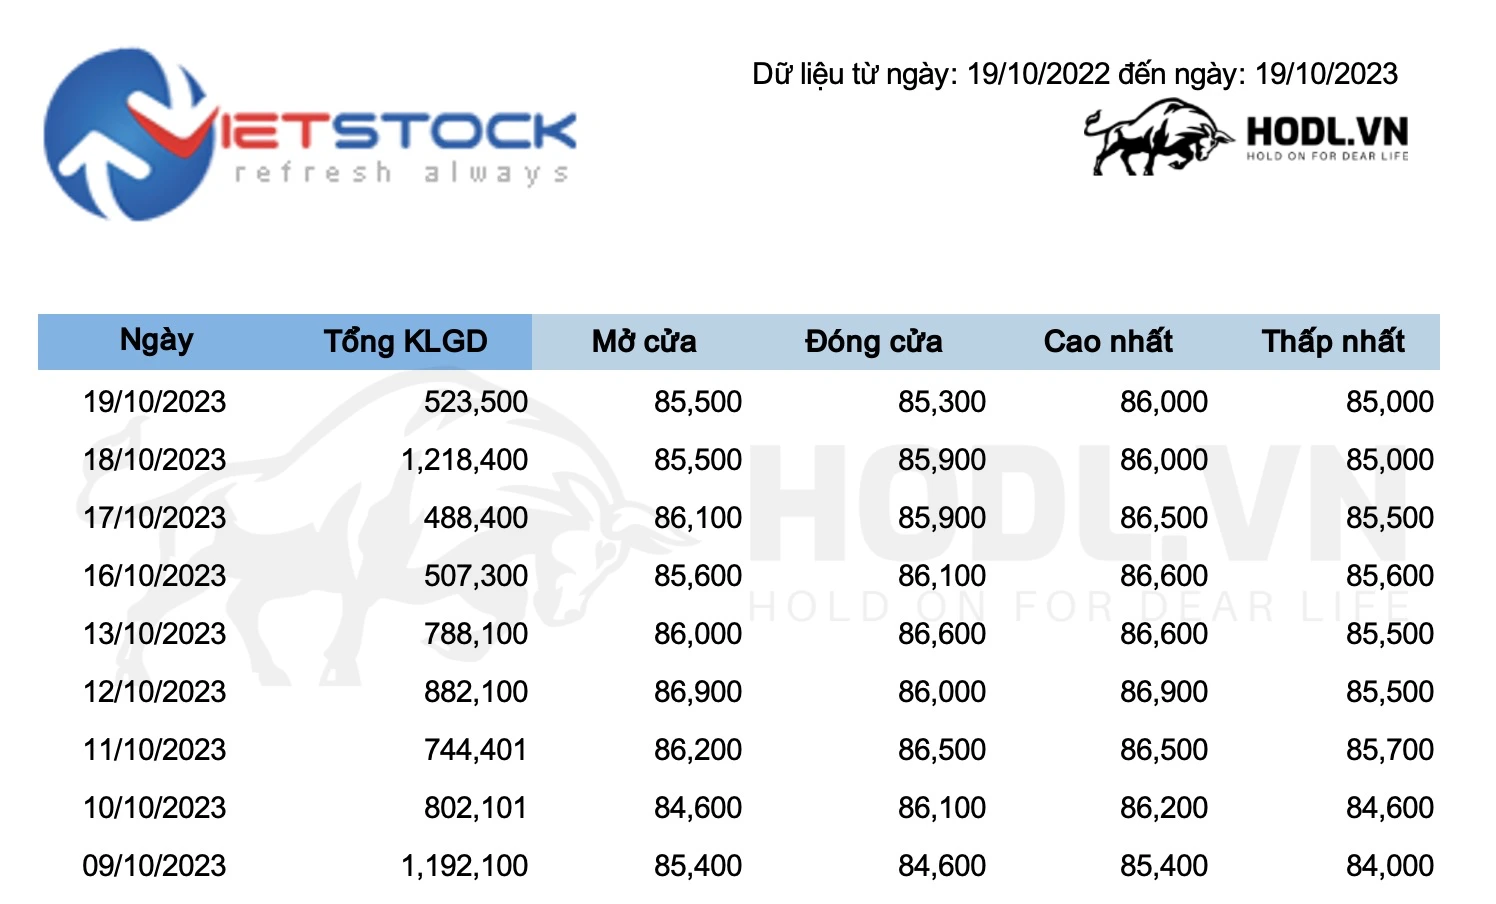 Lịch sử giá cổ phiếu được trích xuất từ Vietstock sang File Excel